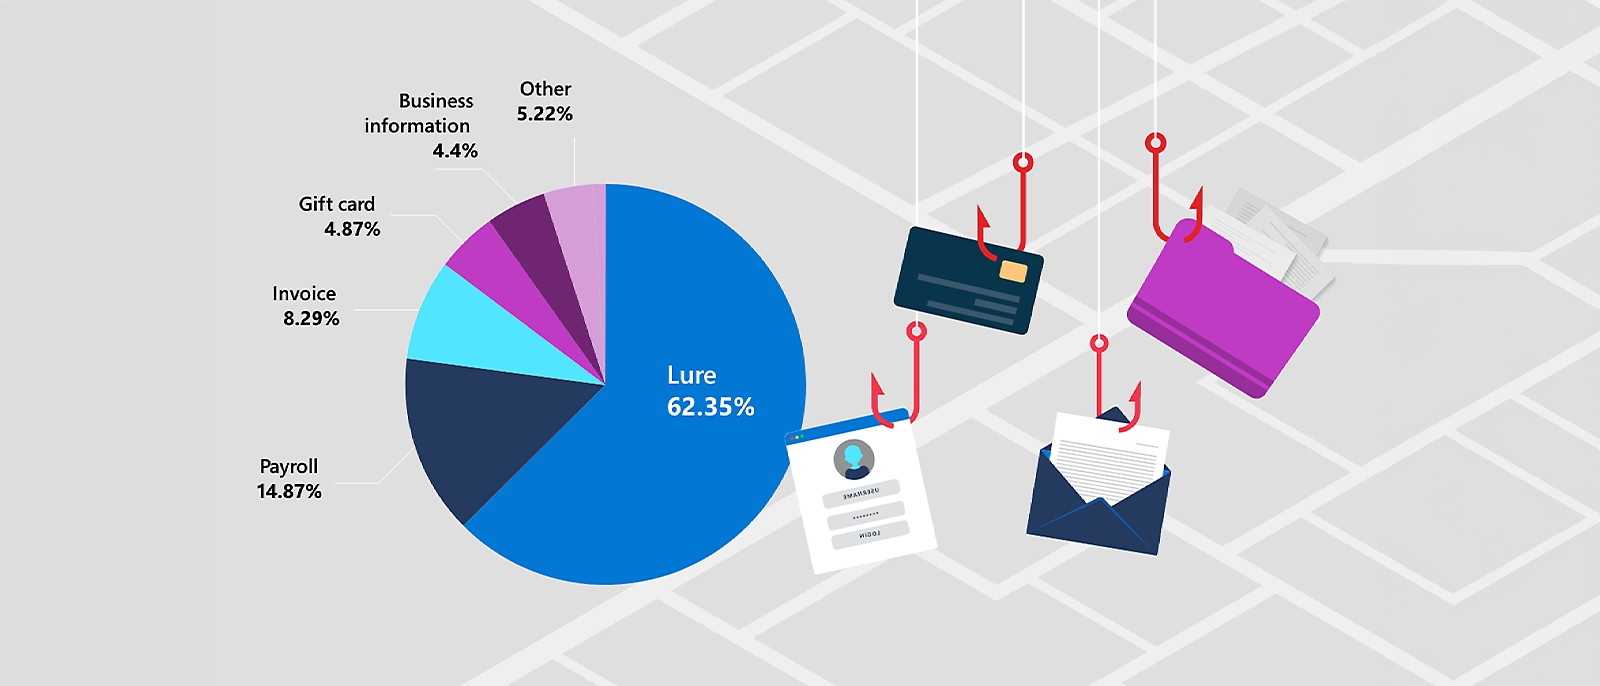 Gráfico circular que muestra el desglose porcentual de los distintos tipos de correos de phishing que se utilizan en los ataques de Compromiso de correo empresarial. El Engaño es el tipo más común con un 62,35 %, seguido de las Nóminas (14,87 %), las Facturas (8,29 %), las Tarjetas regalo (4,87 %), Información de la empresa (4,4 %) y Otros (5,22 %).